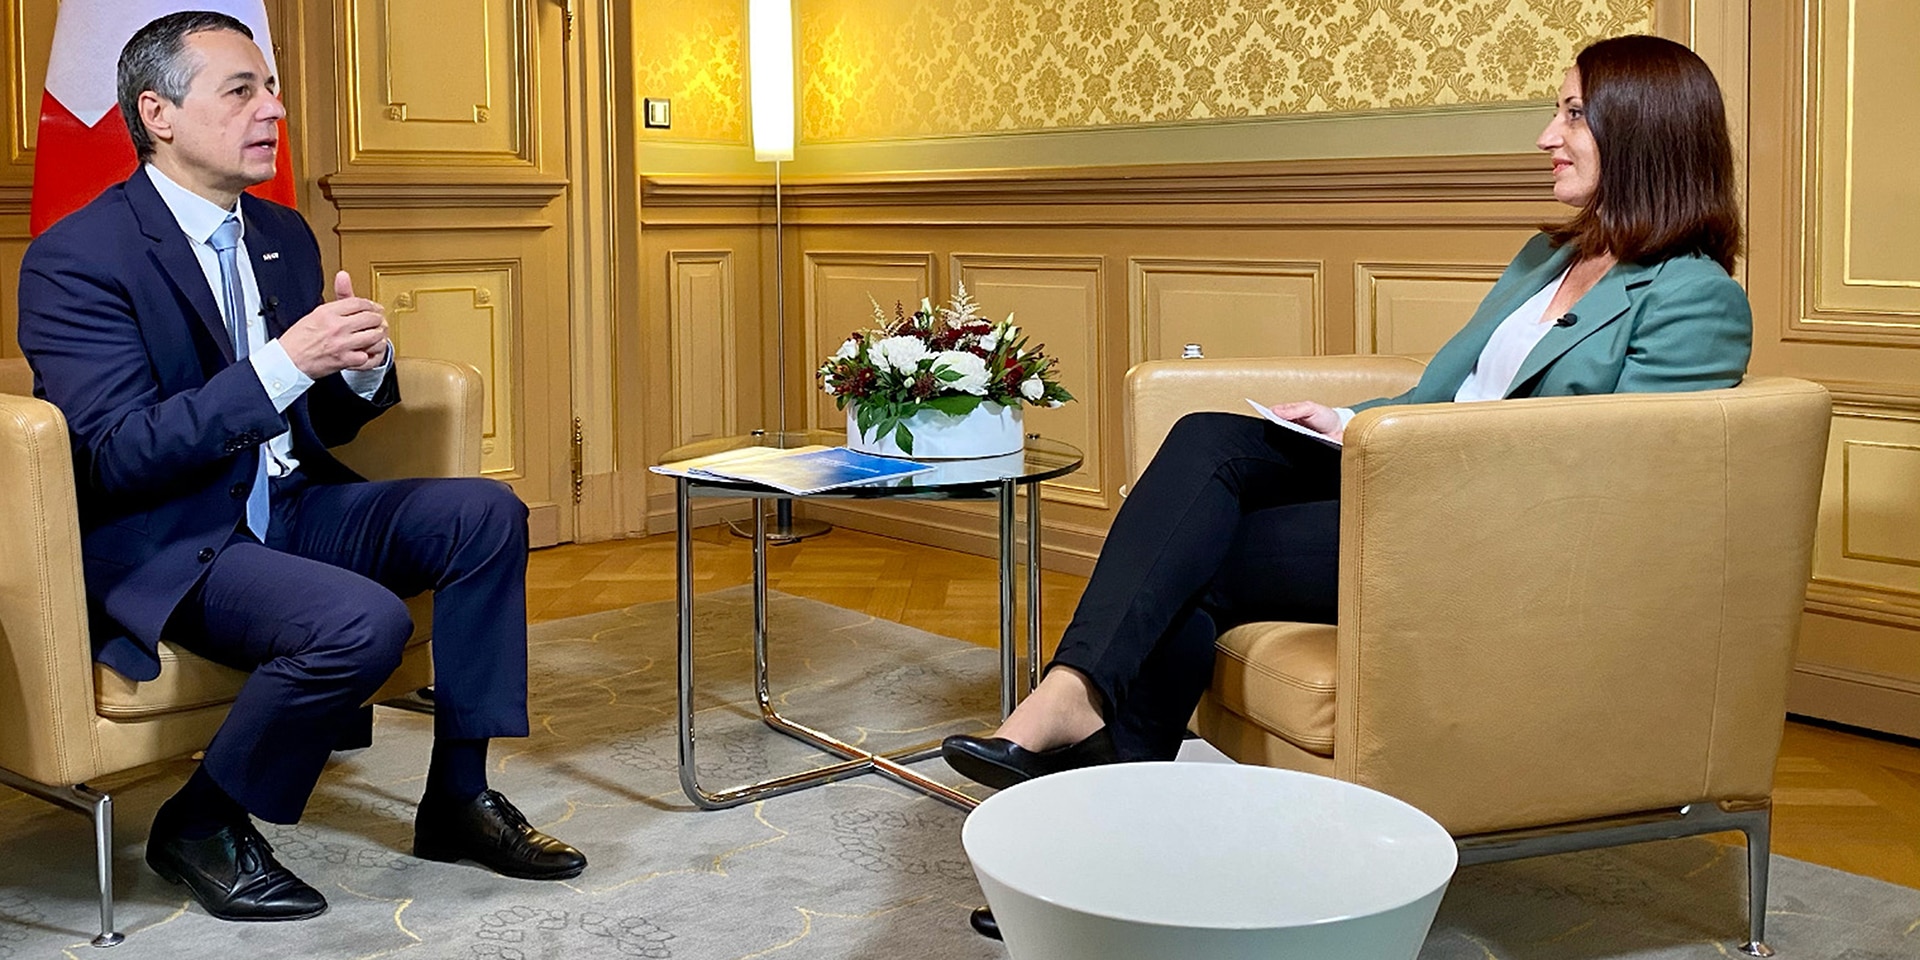  Bundesrat Ignazio Cassis sitzt in einem Stuhl und unterhält sich im Rahmen eines Interviews mit der Moderatorin. 